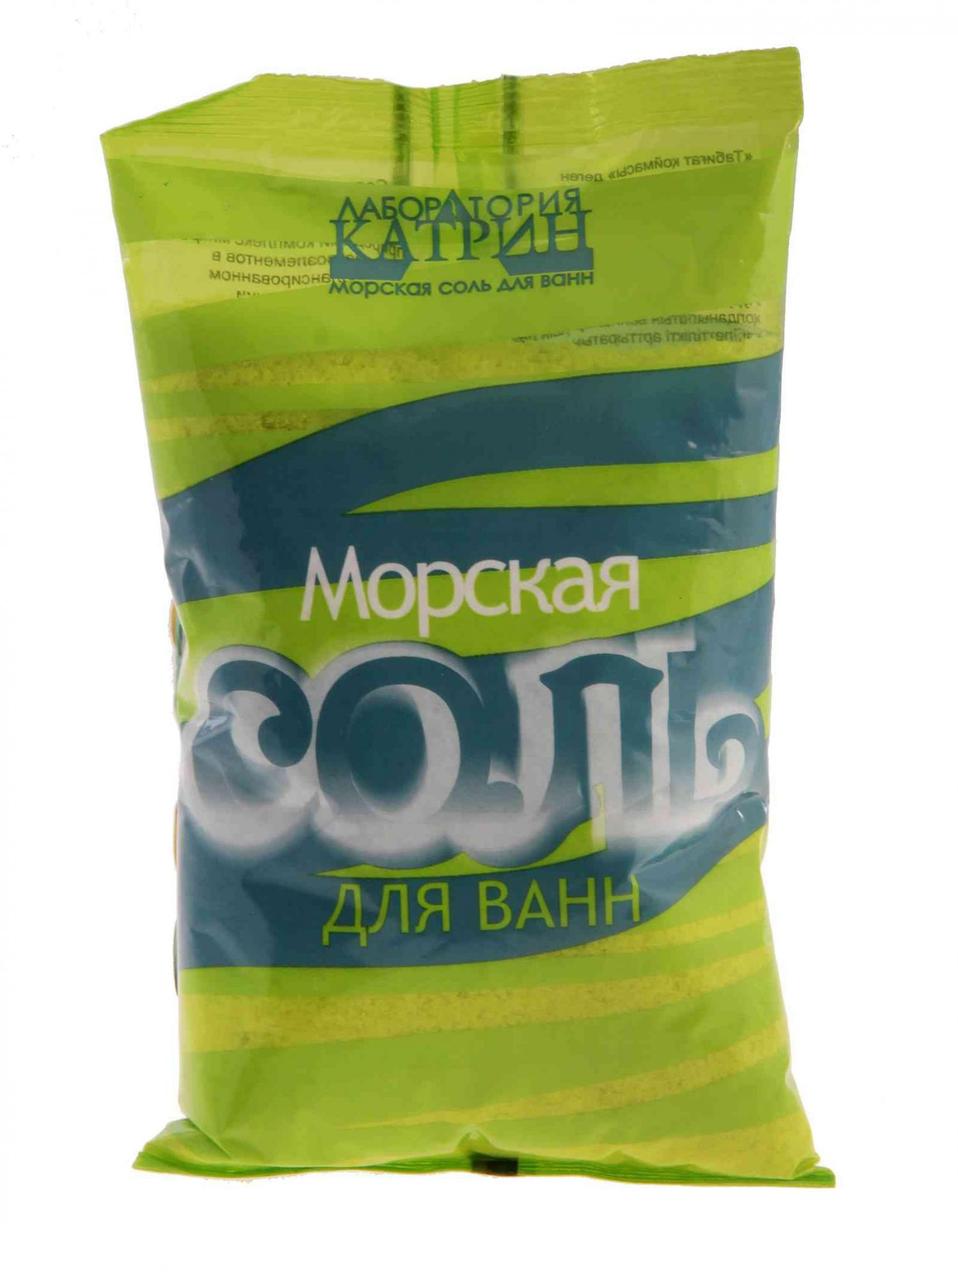 Соль морская для ванн "Кладовая природы", 1 кг